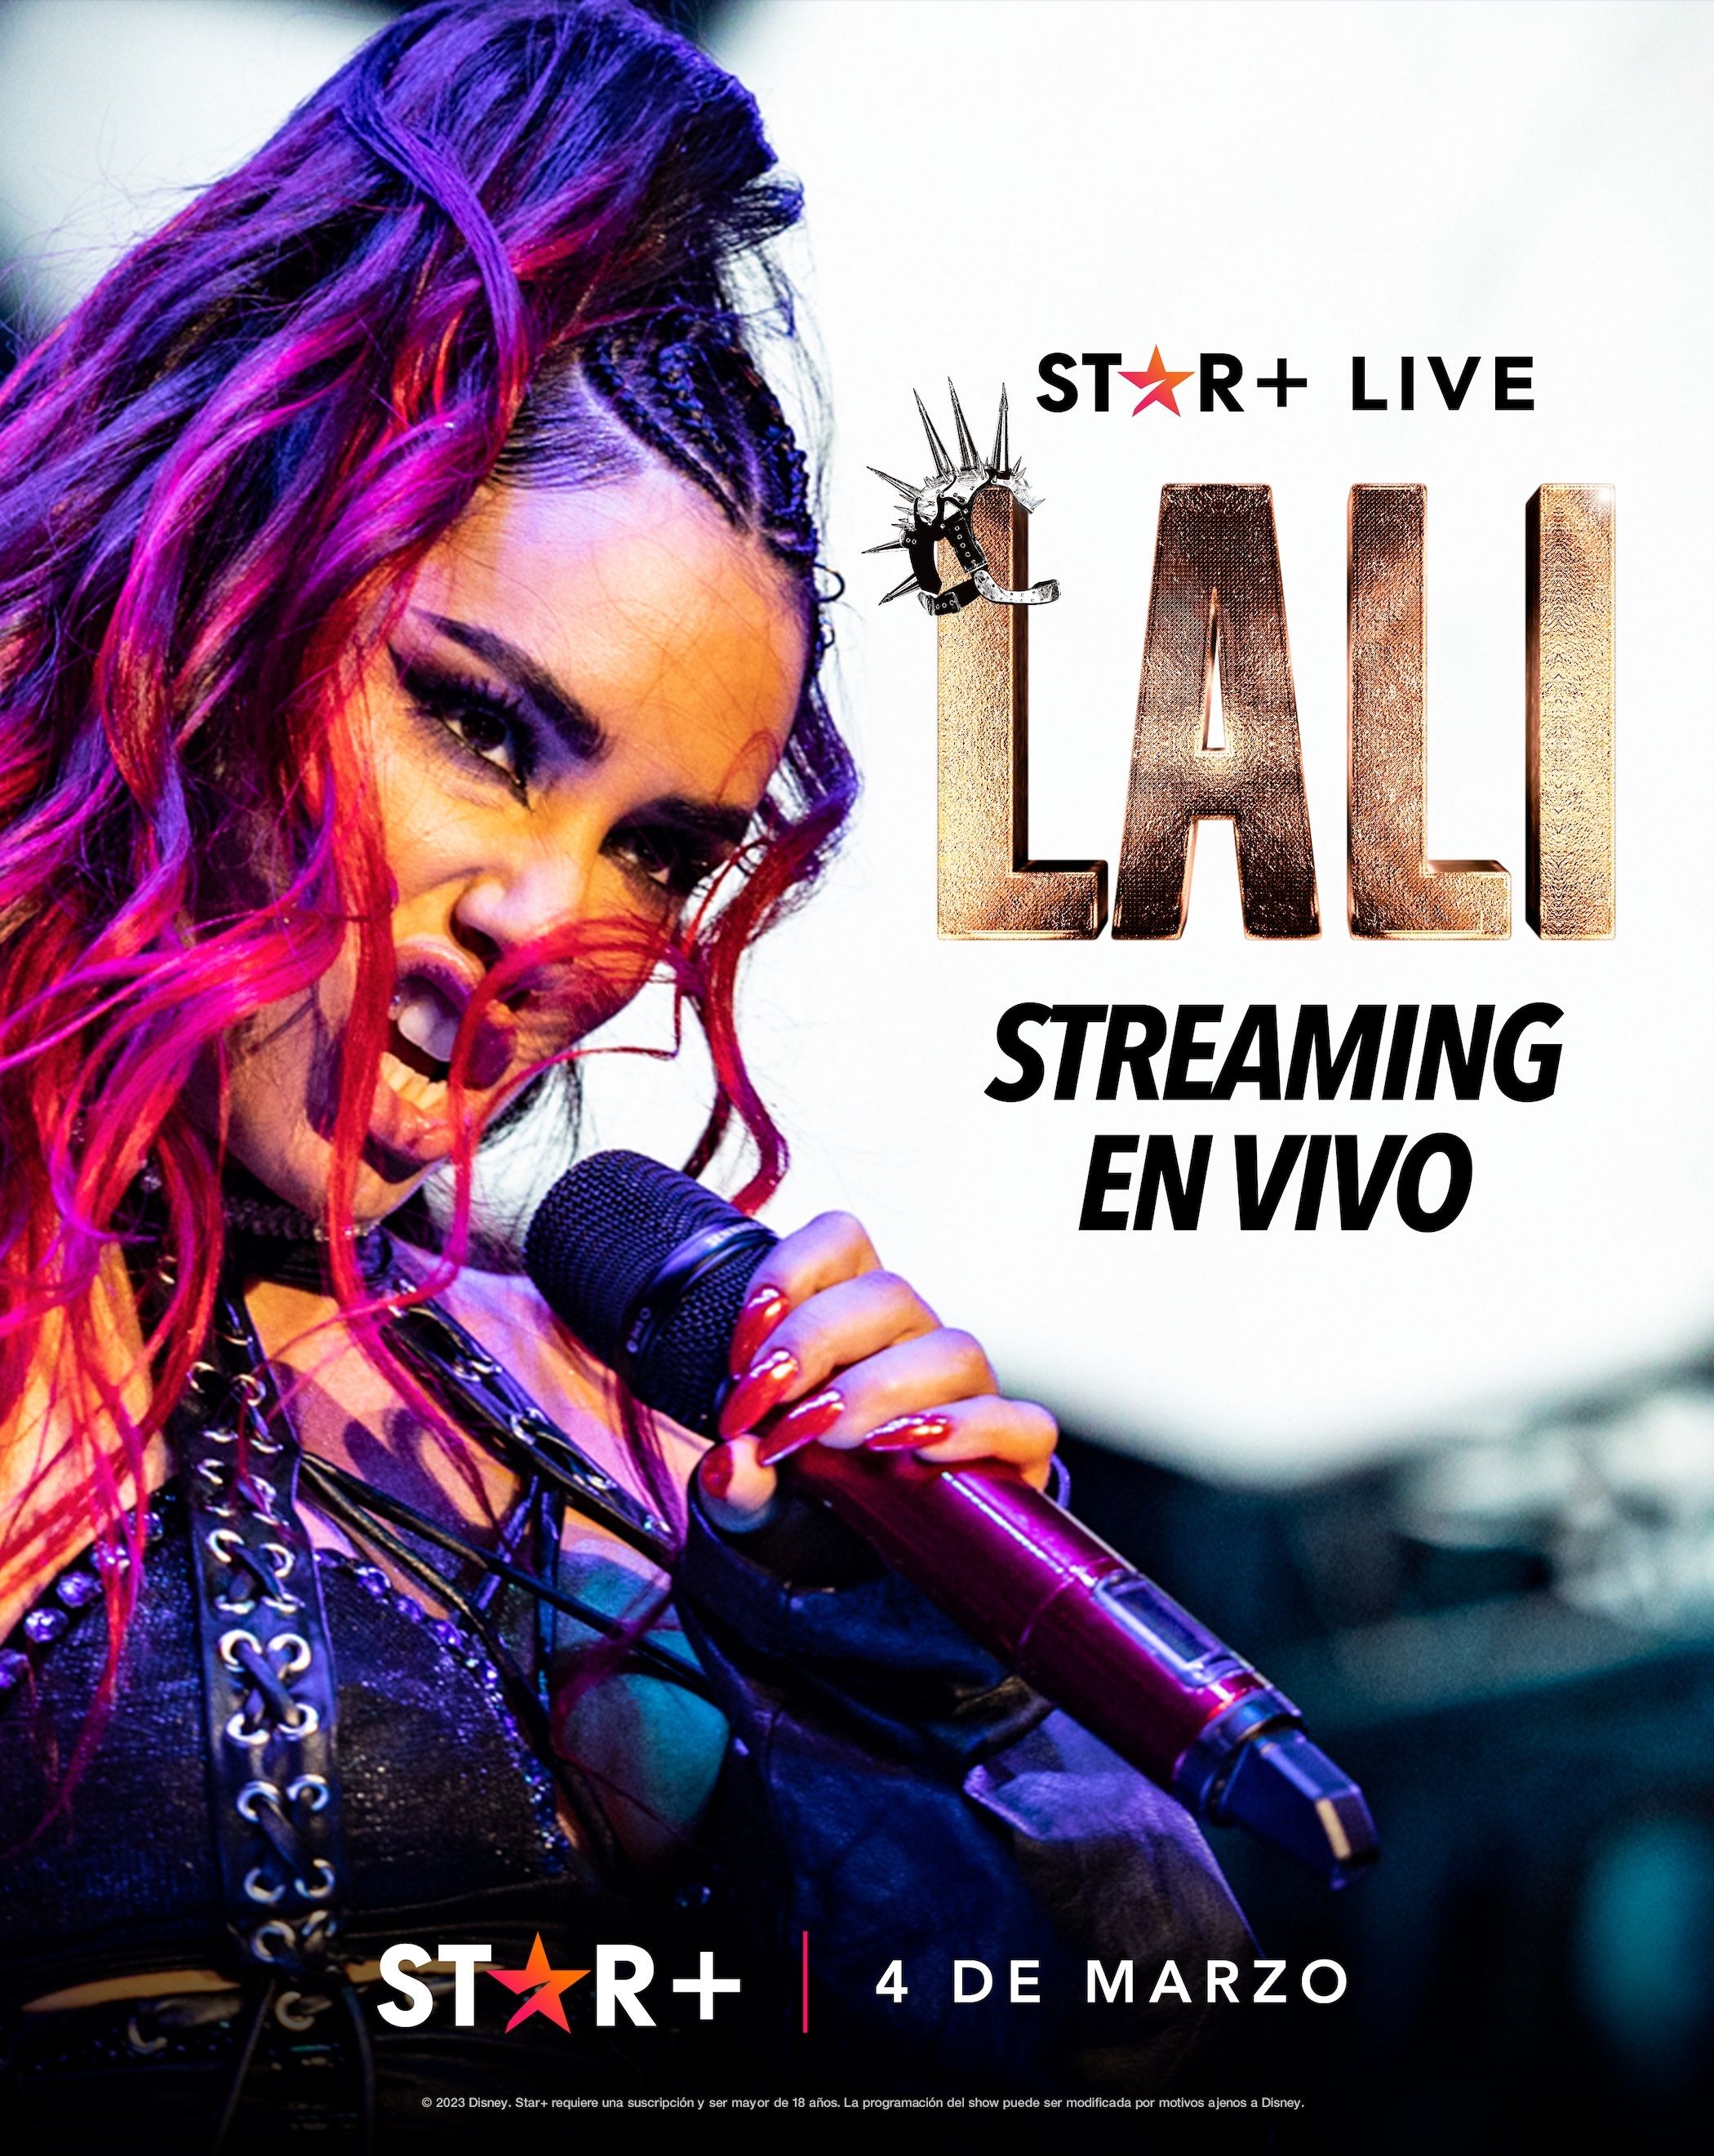 Póster oficial del concierto de Lali Espósito en streaming. (Star+)